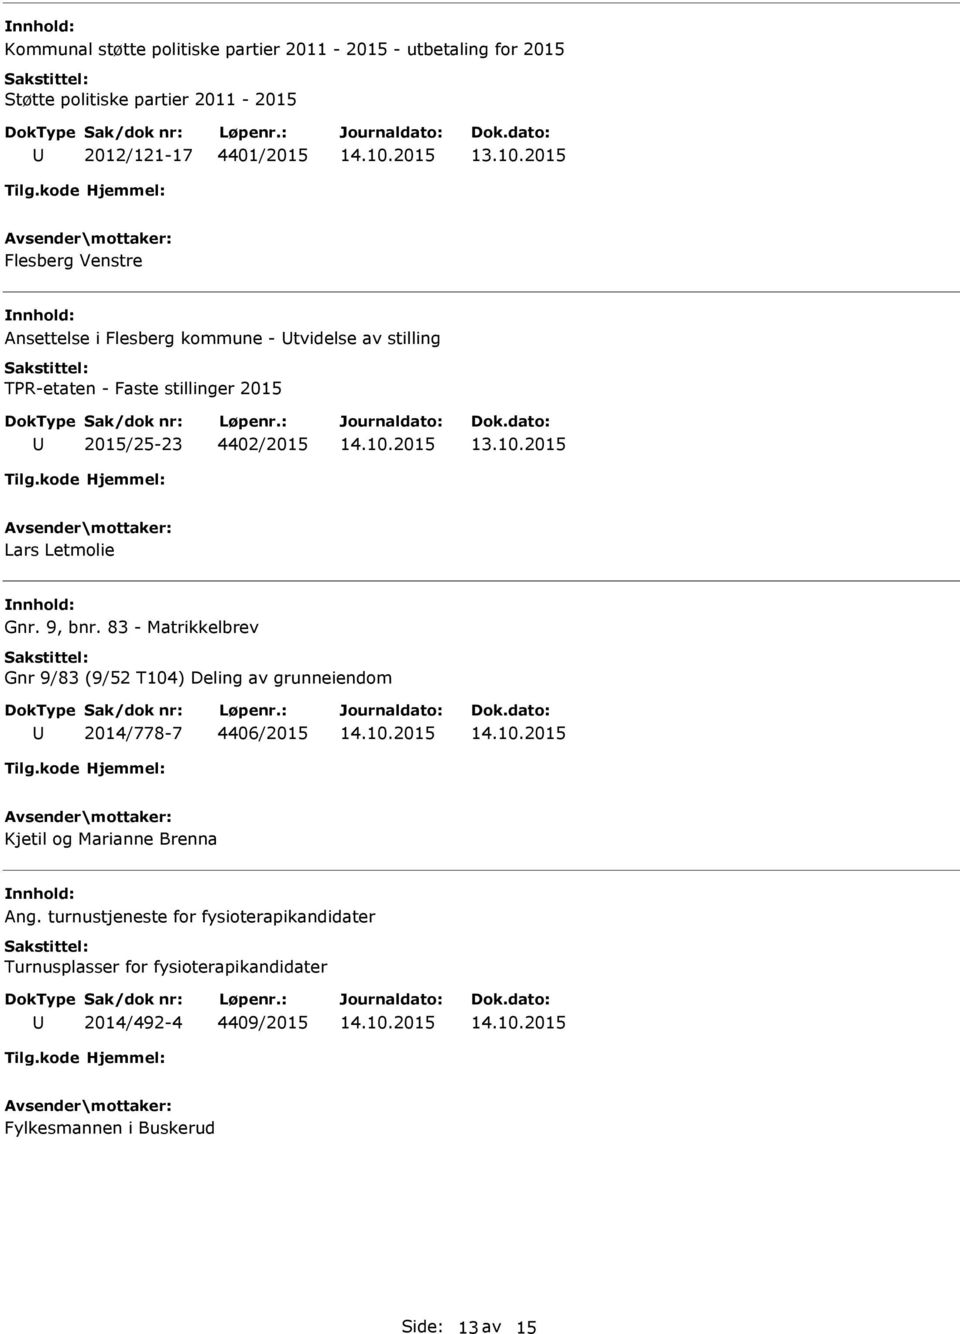 Gnr. 9, bnr. 83 - Matrikkelbrev Gnr 9/83 (9/52 T104) Deling av grunneiendom 2014/778-7 4406/2015 Kjetil og Marianne Brenna Ang.